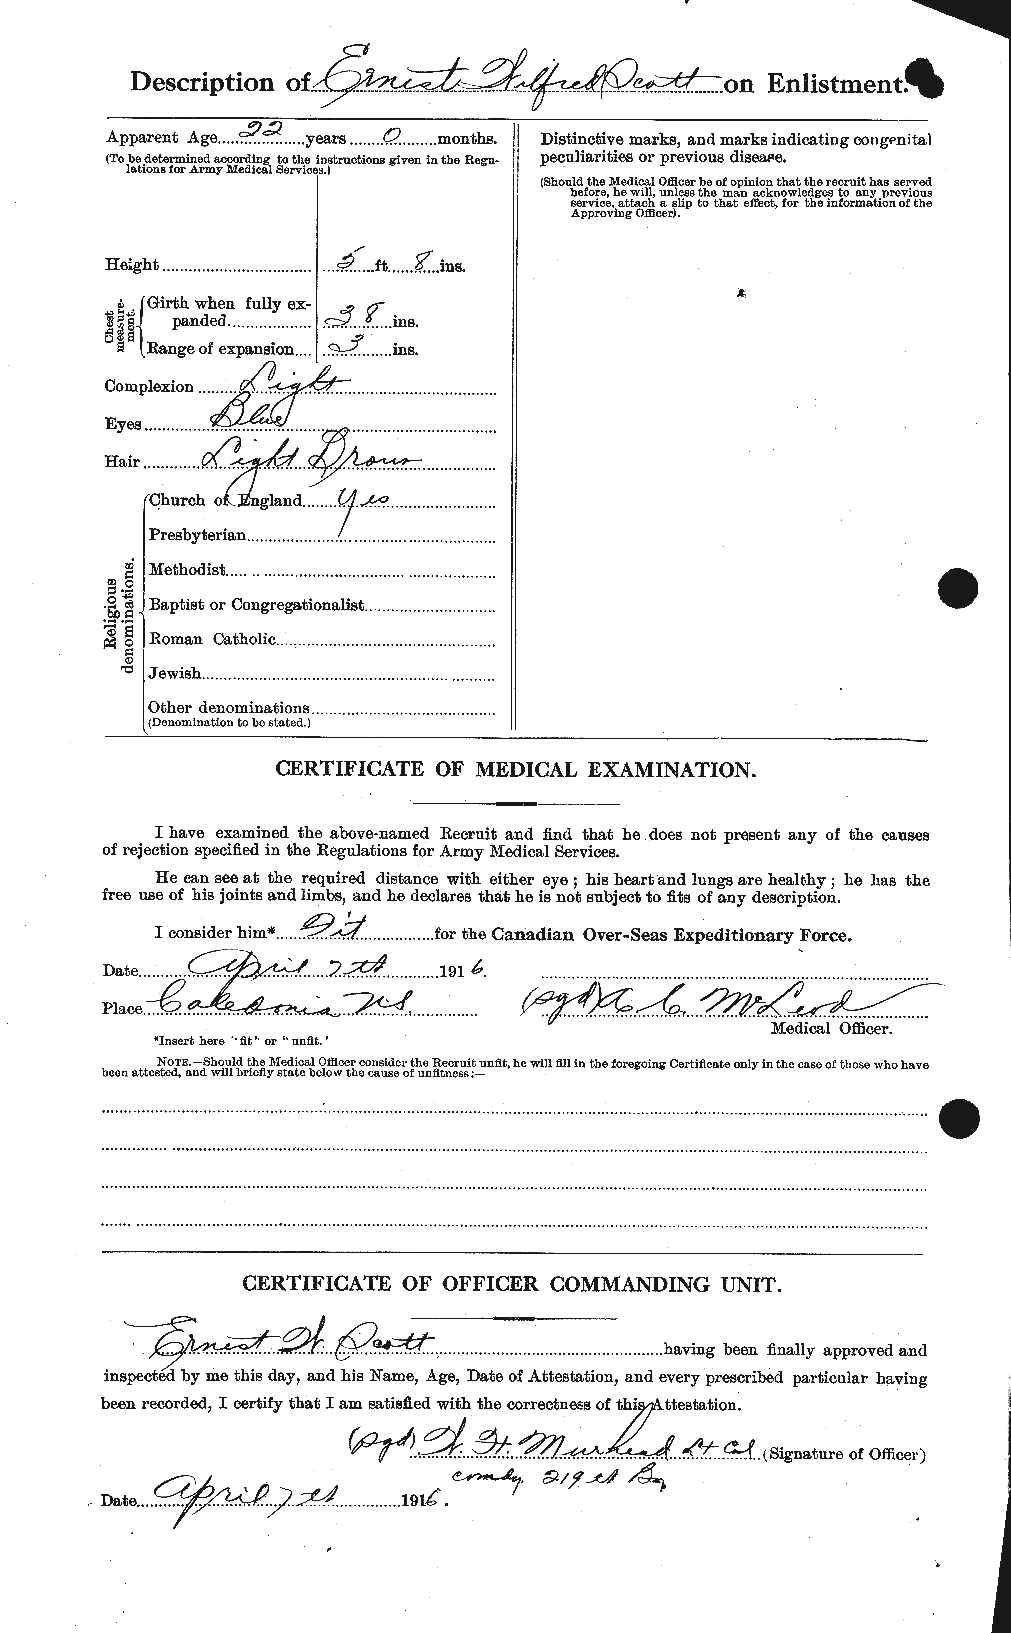 Dossiers du Personnel de la Première Guerre mondiale - CEC 085003b